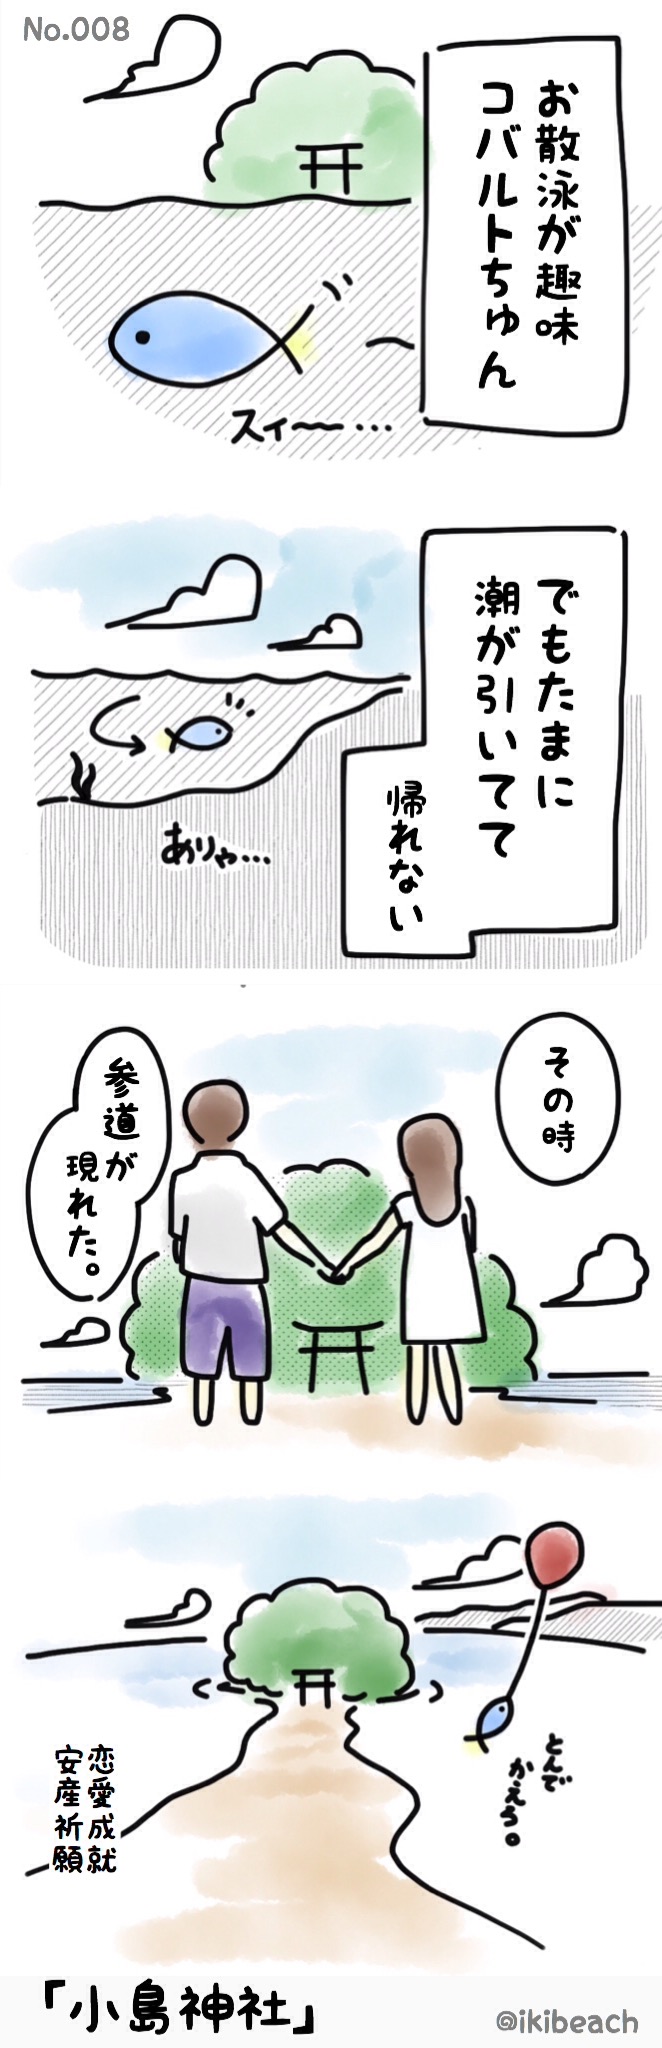 コバルト漫画「お魚だもの。」No.008『小島神社』